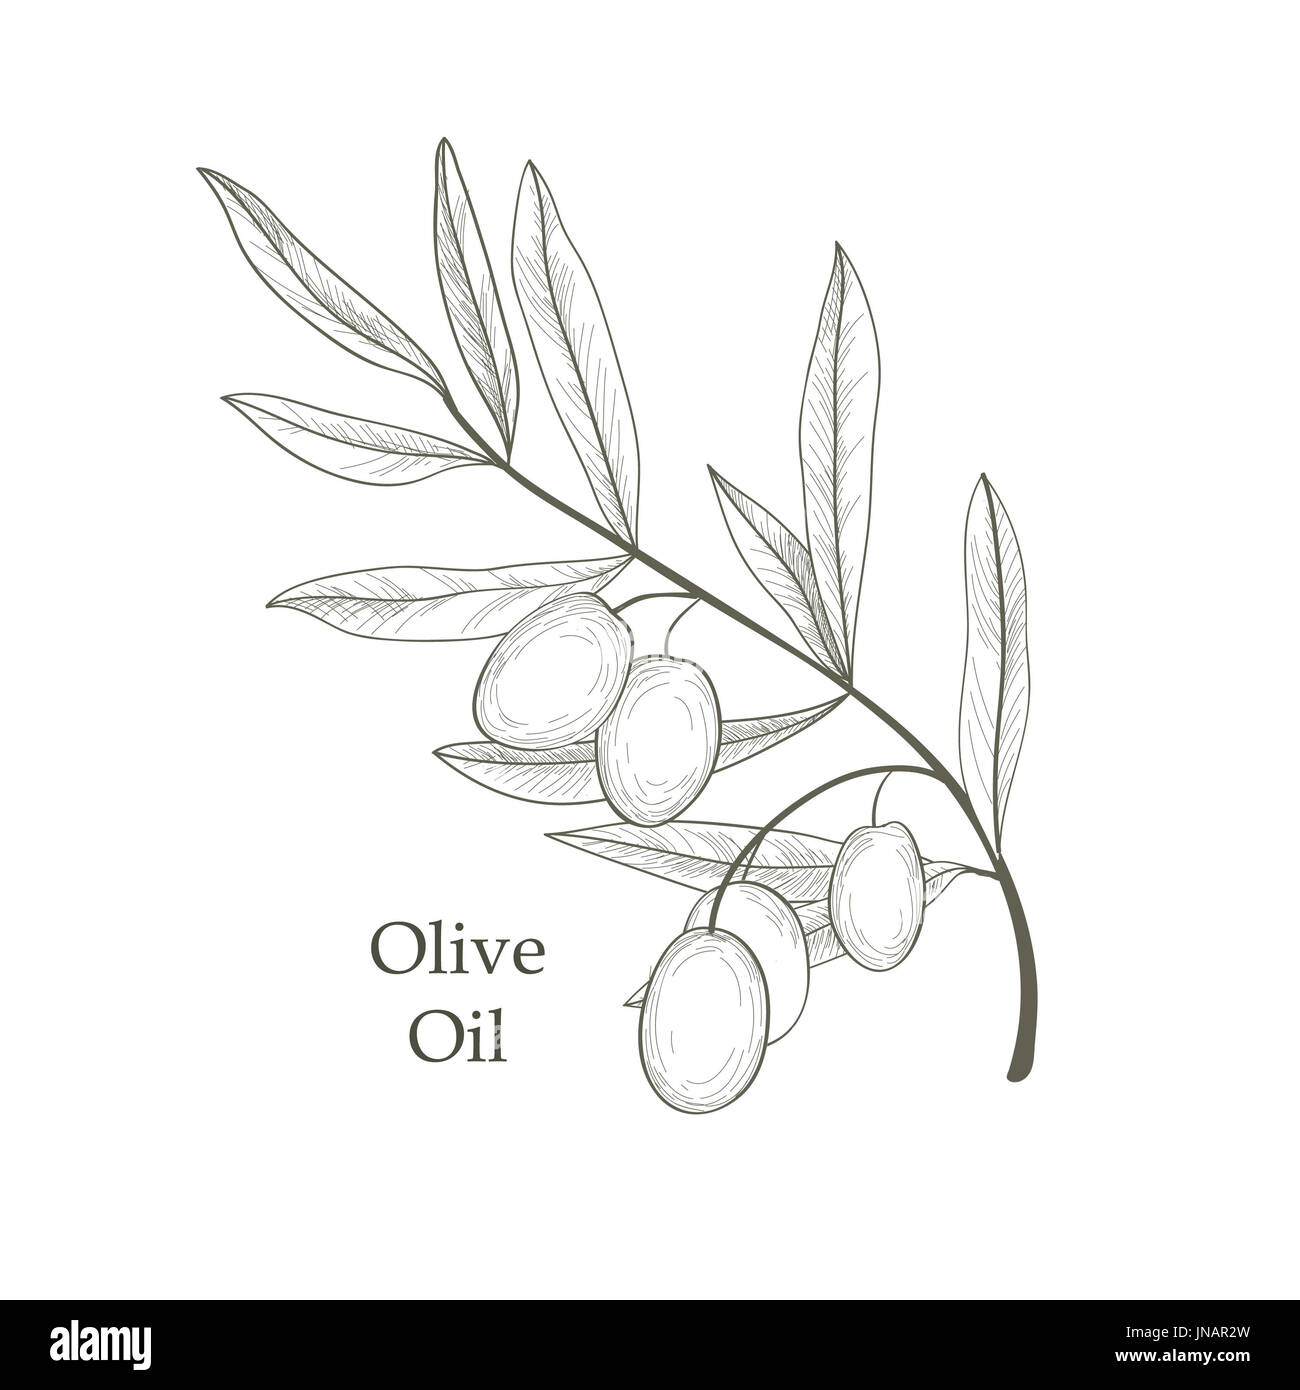 Branche de l'arbre d'olive olives avec croquis isolé sur fond blanc Retro Vector illustration gravure olive branch Banque D'Images